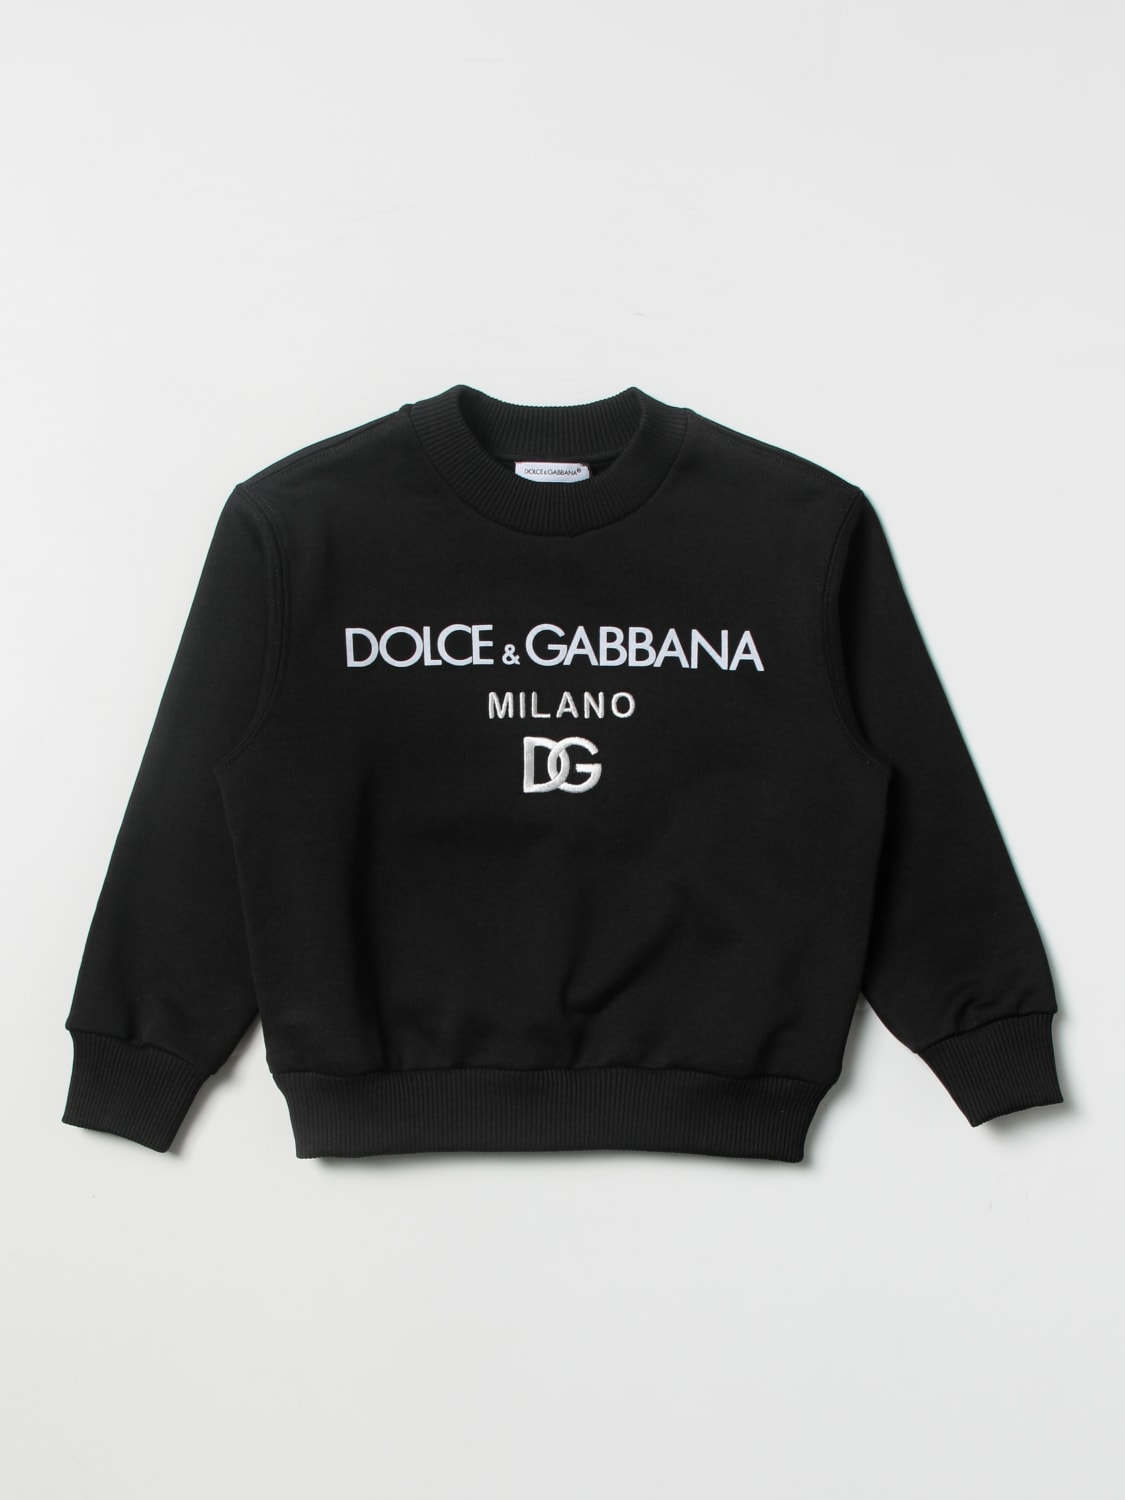 DOLCE & GABBANA: Sweater kids - Black | Dolce & Gabbana sweater ...